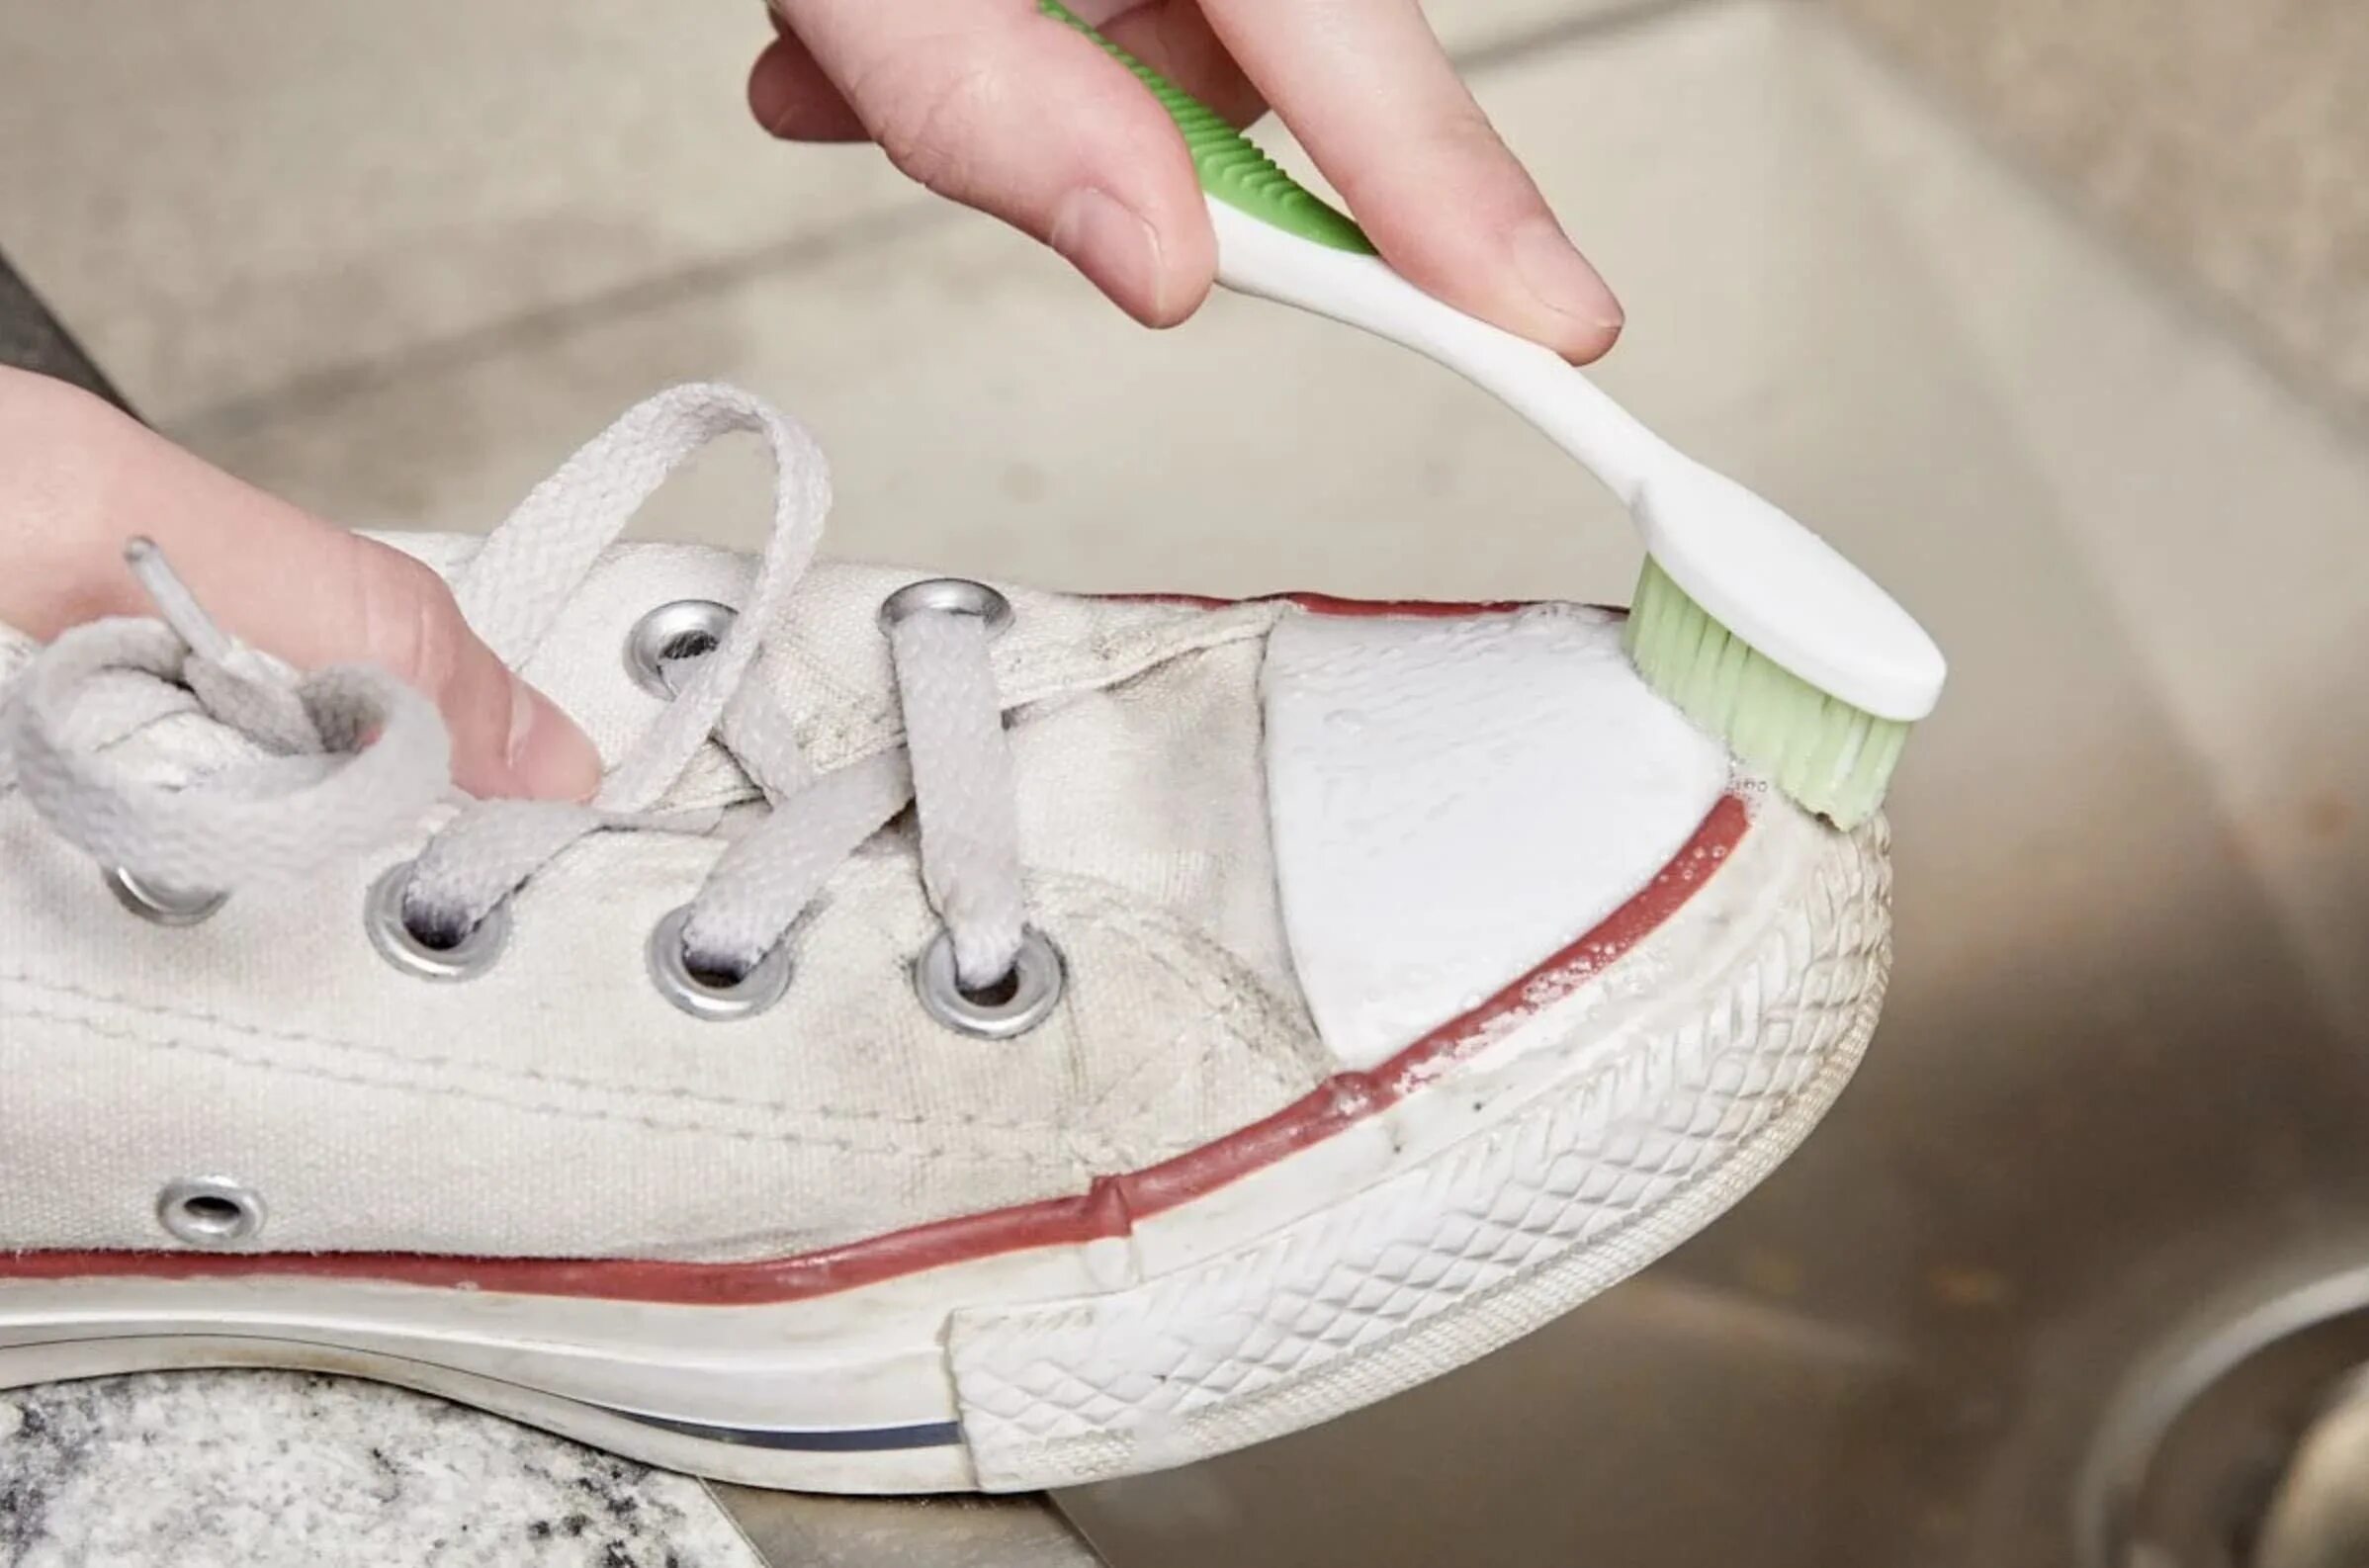 Можно ли стирать кеды в стиральной машине. Кеды в клею. Зубная паста для кроссовок. Протирает белую кеды салфеткой. Очистить белую обувь зубной пастой.